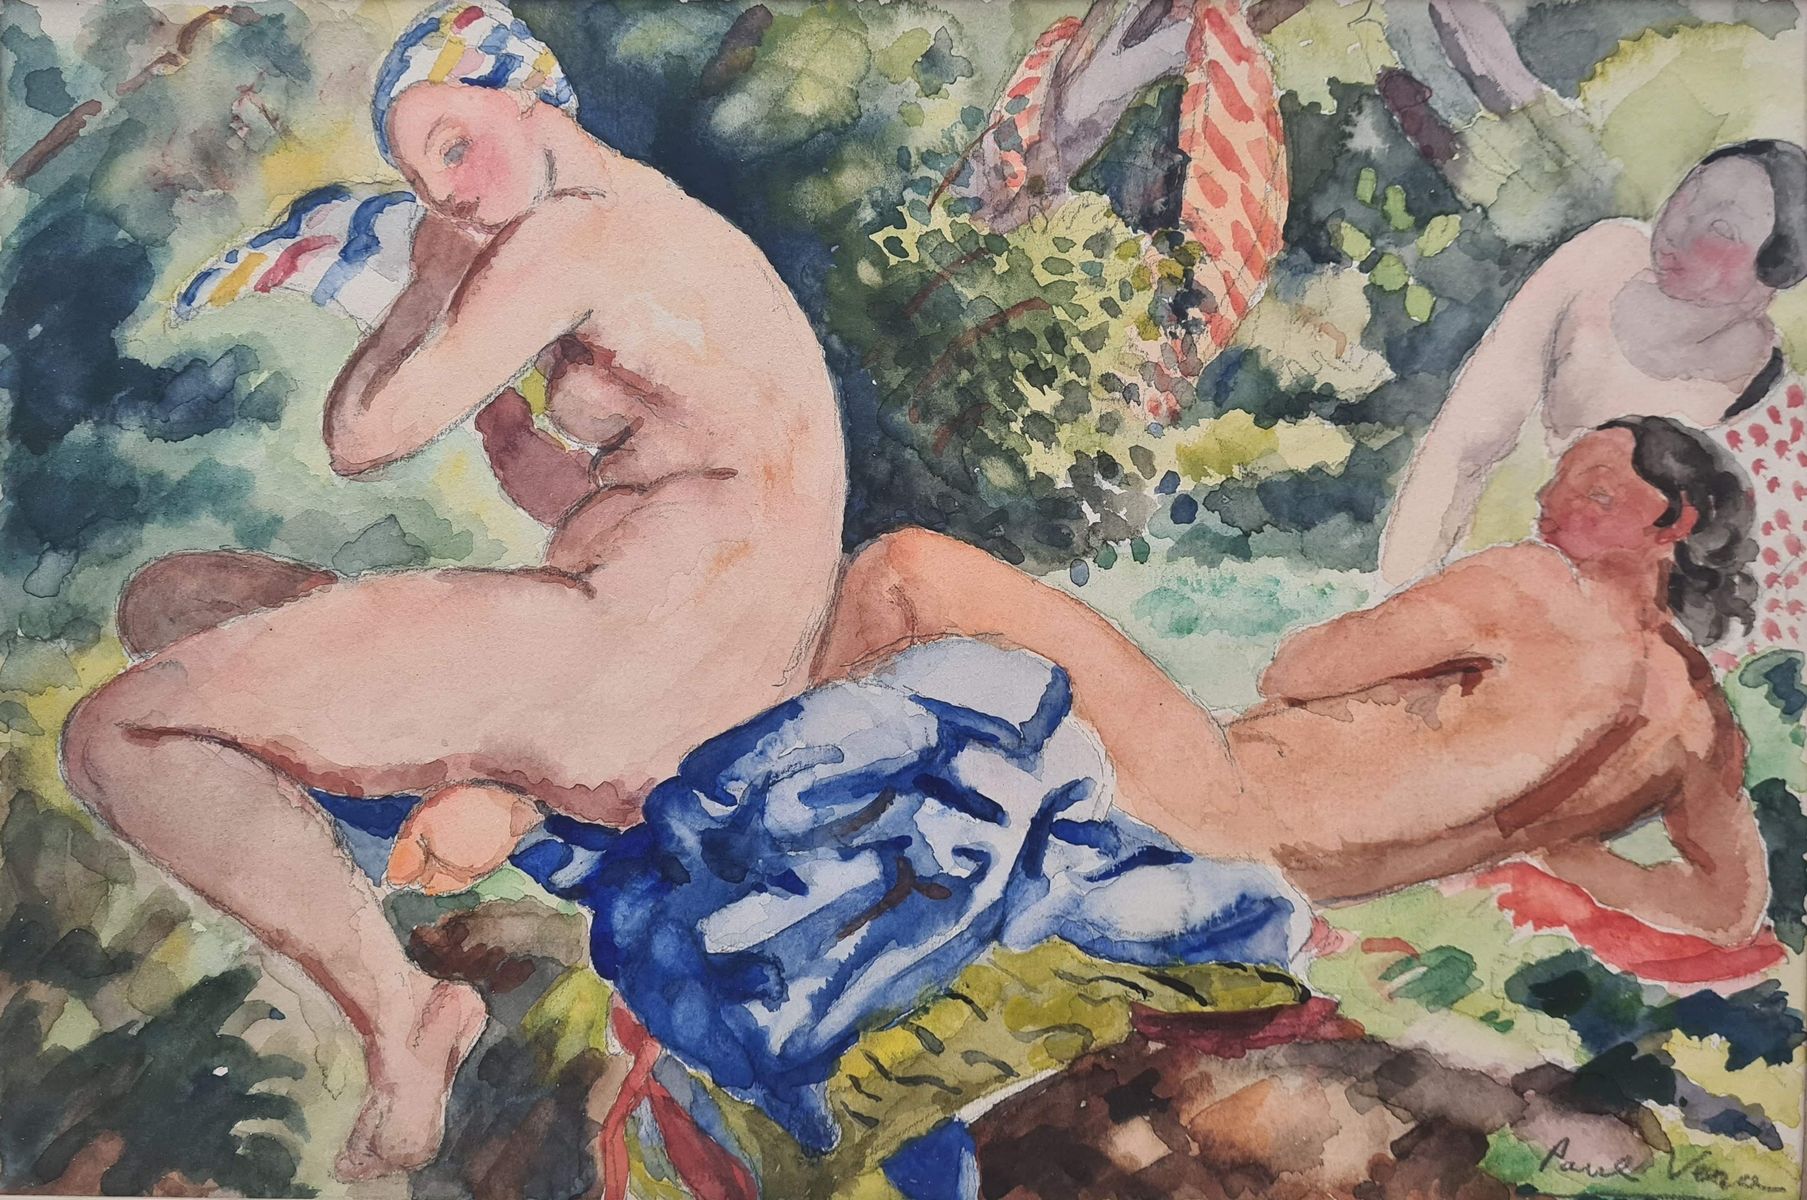 Null 维拉-保罗，1882-1957
沐浴者
水彩画
右下角有签名
23 x 32 cm